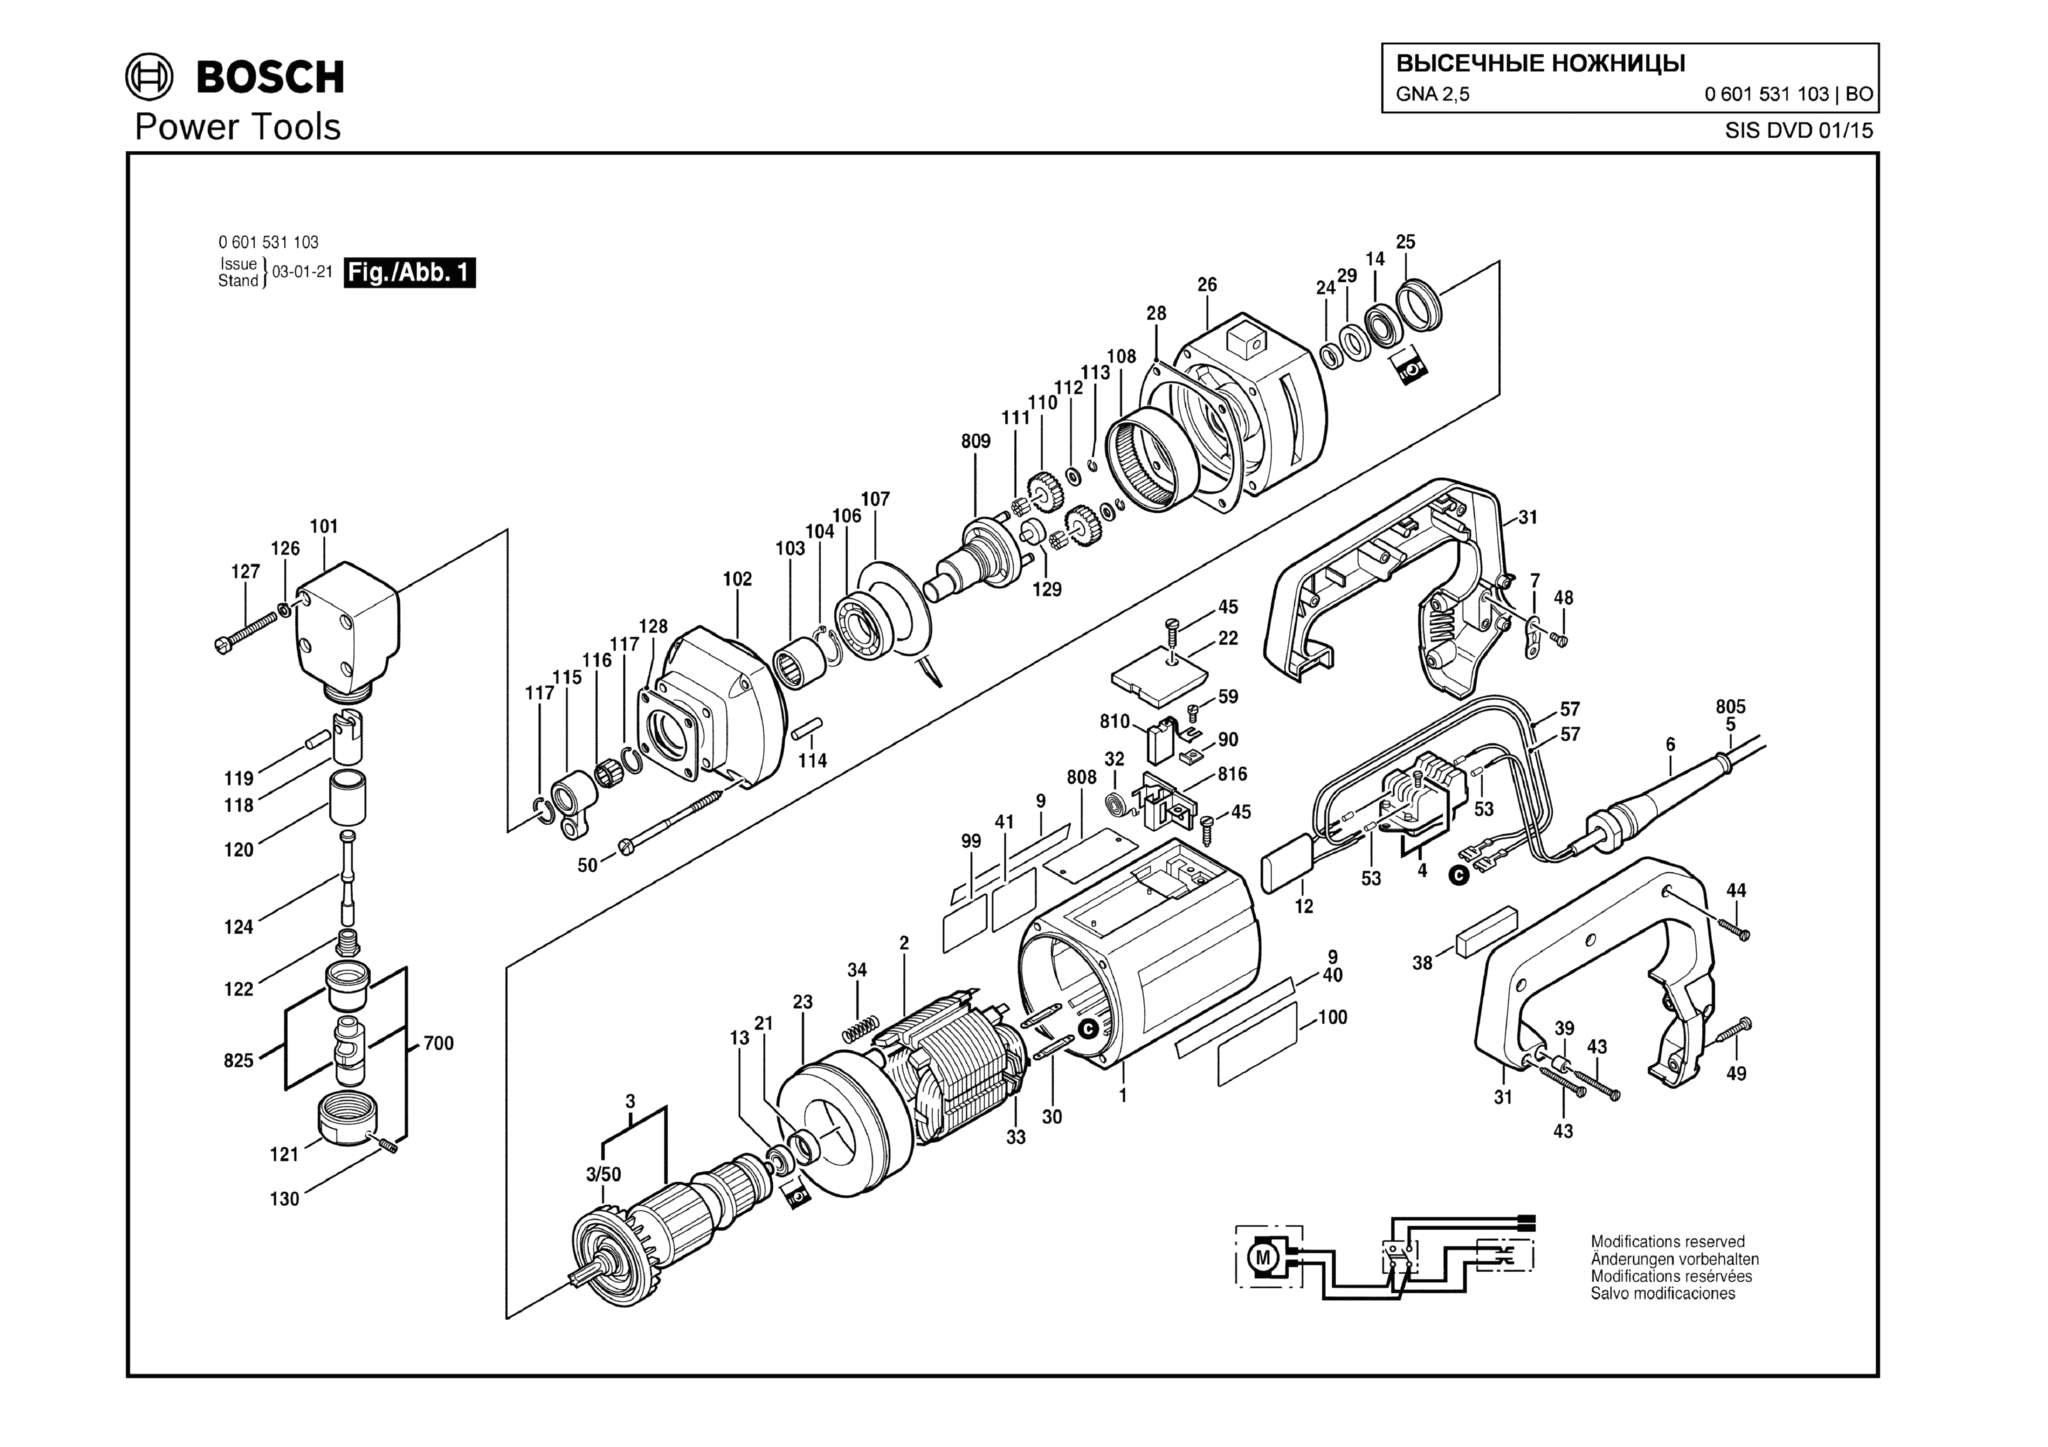 Запчасти, схема и деталировка Bosch GNA 2,5 (ТИП 0601531103)